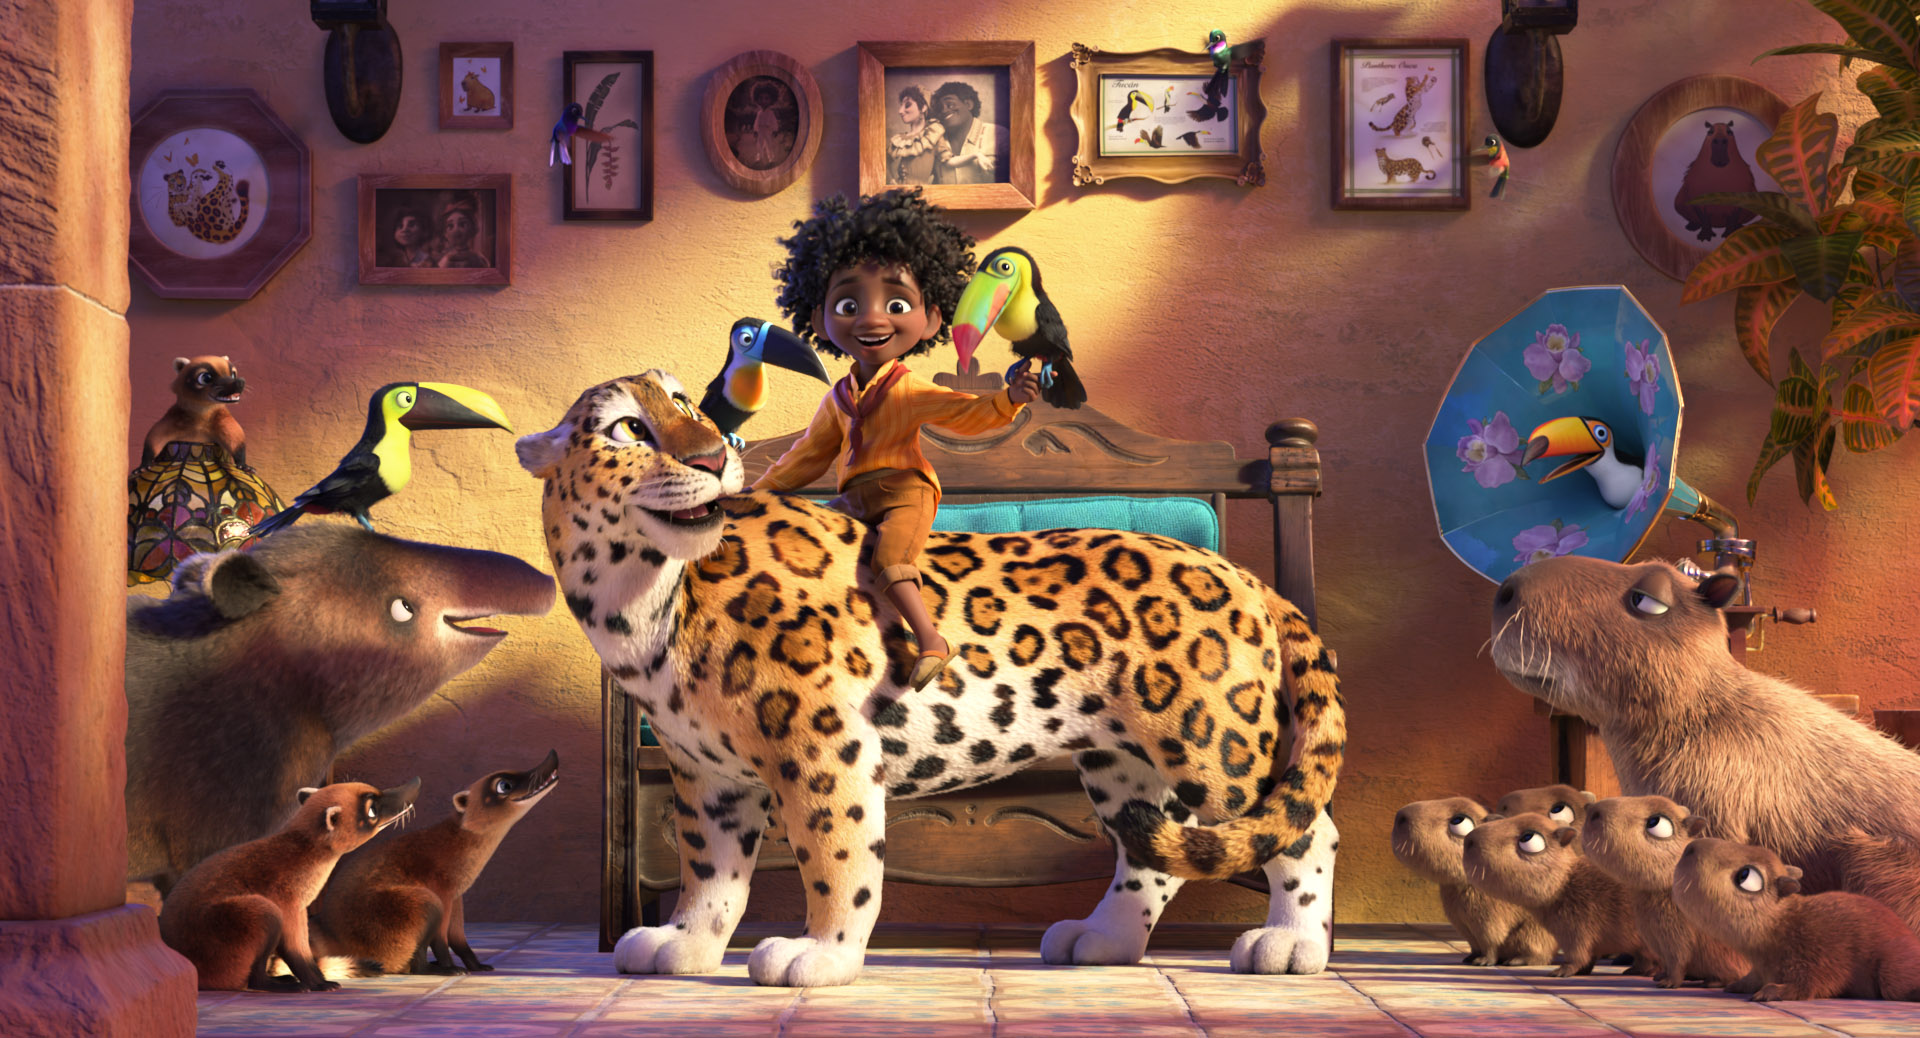 Disney Hadirkan Film Animasi Terbaru 'Encanto', Tentang Apa?